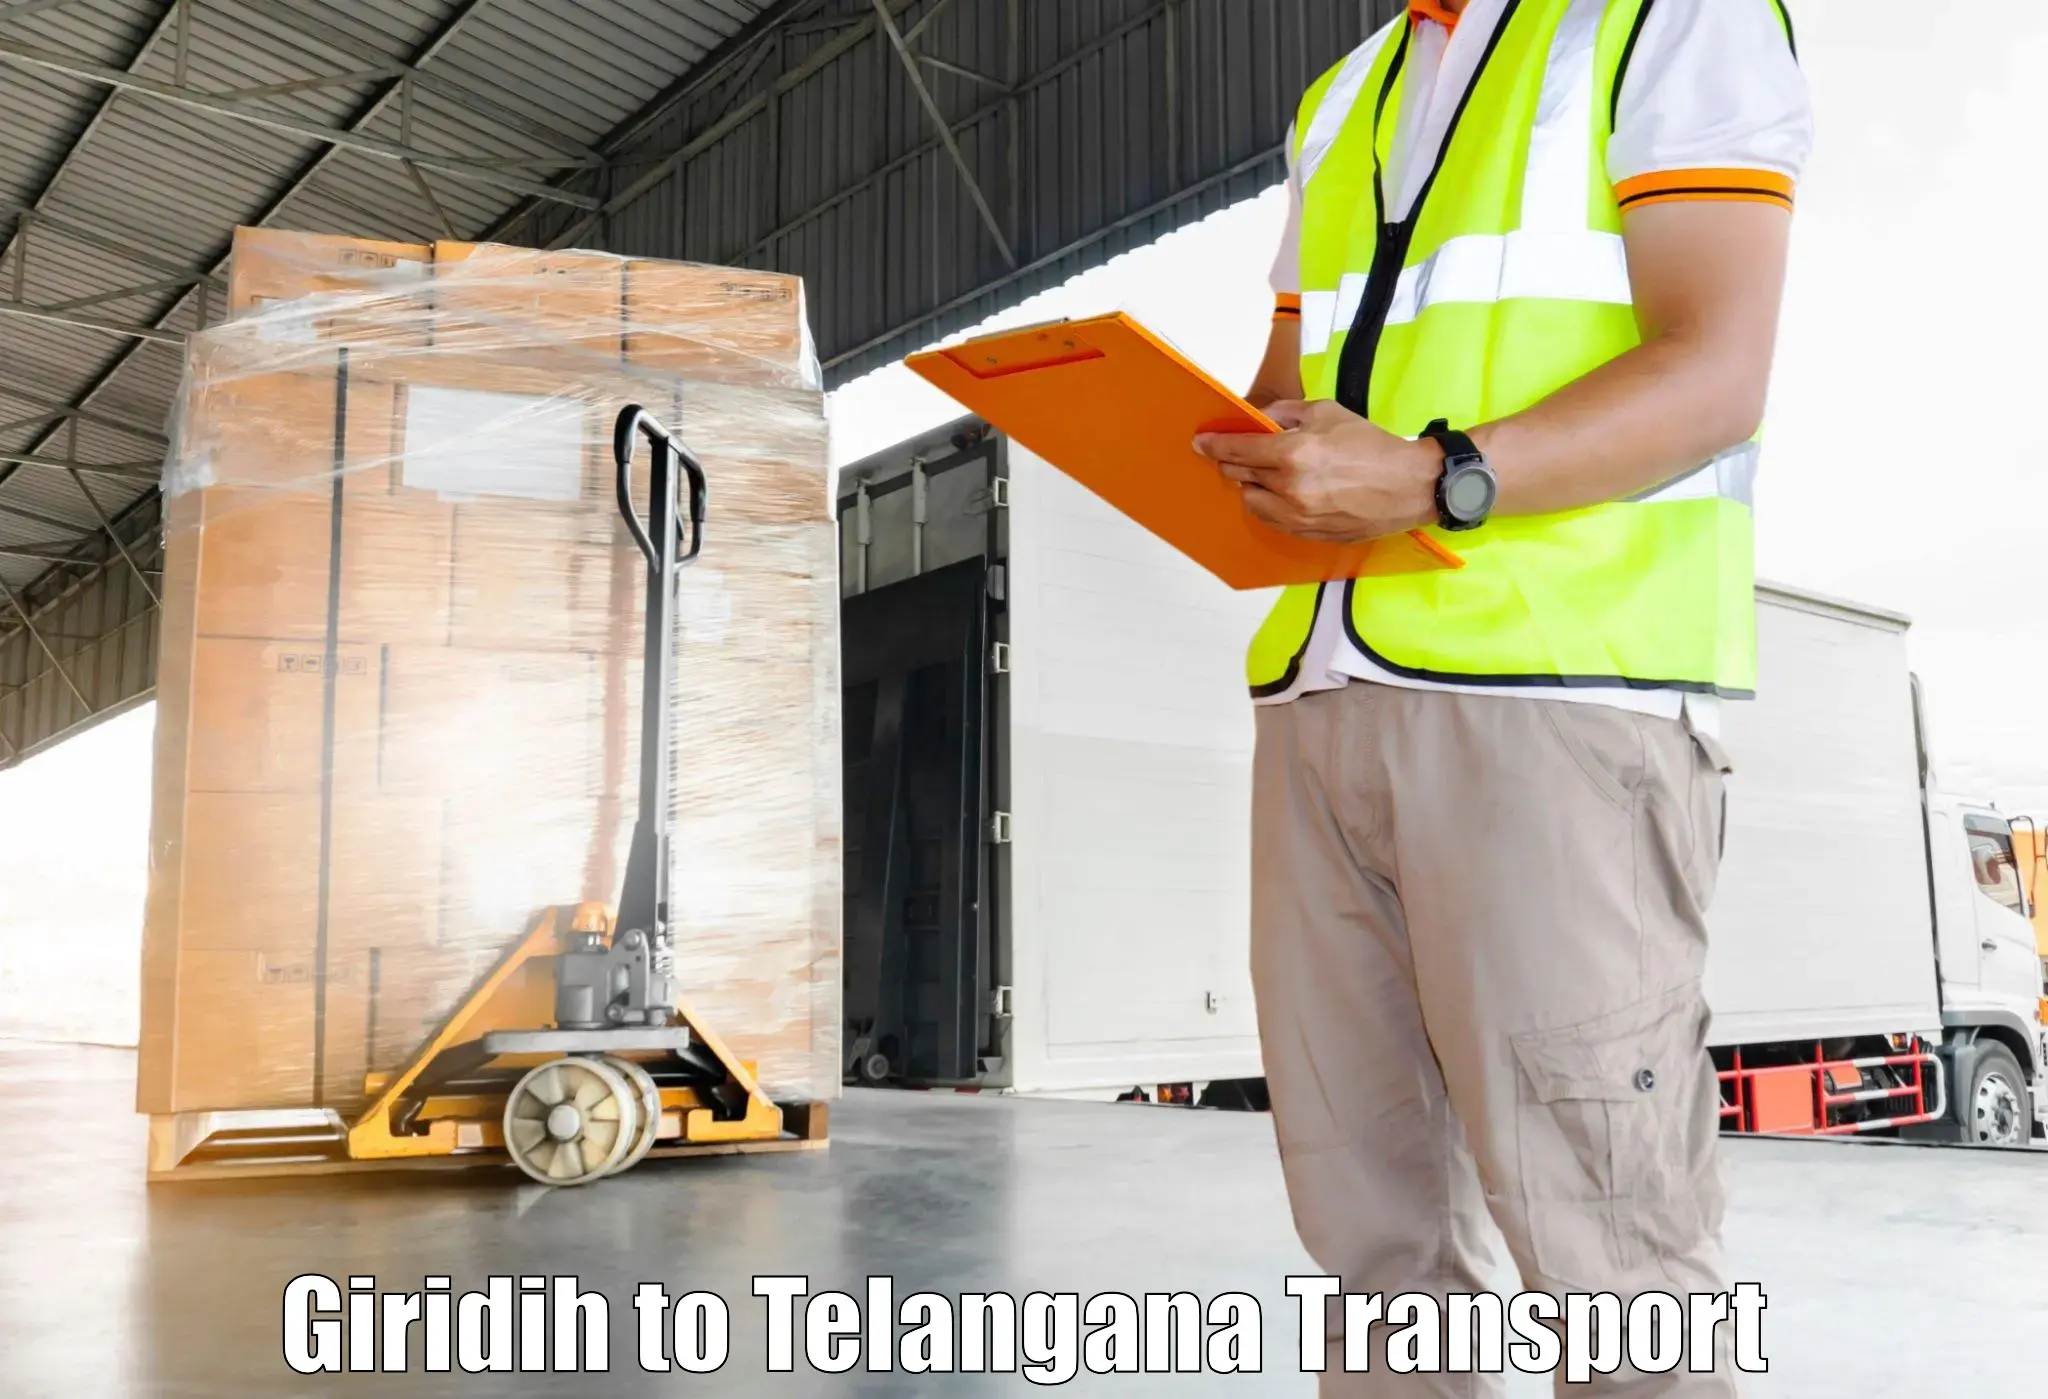 Furniture transport service Giridih to Alair